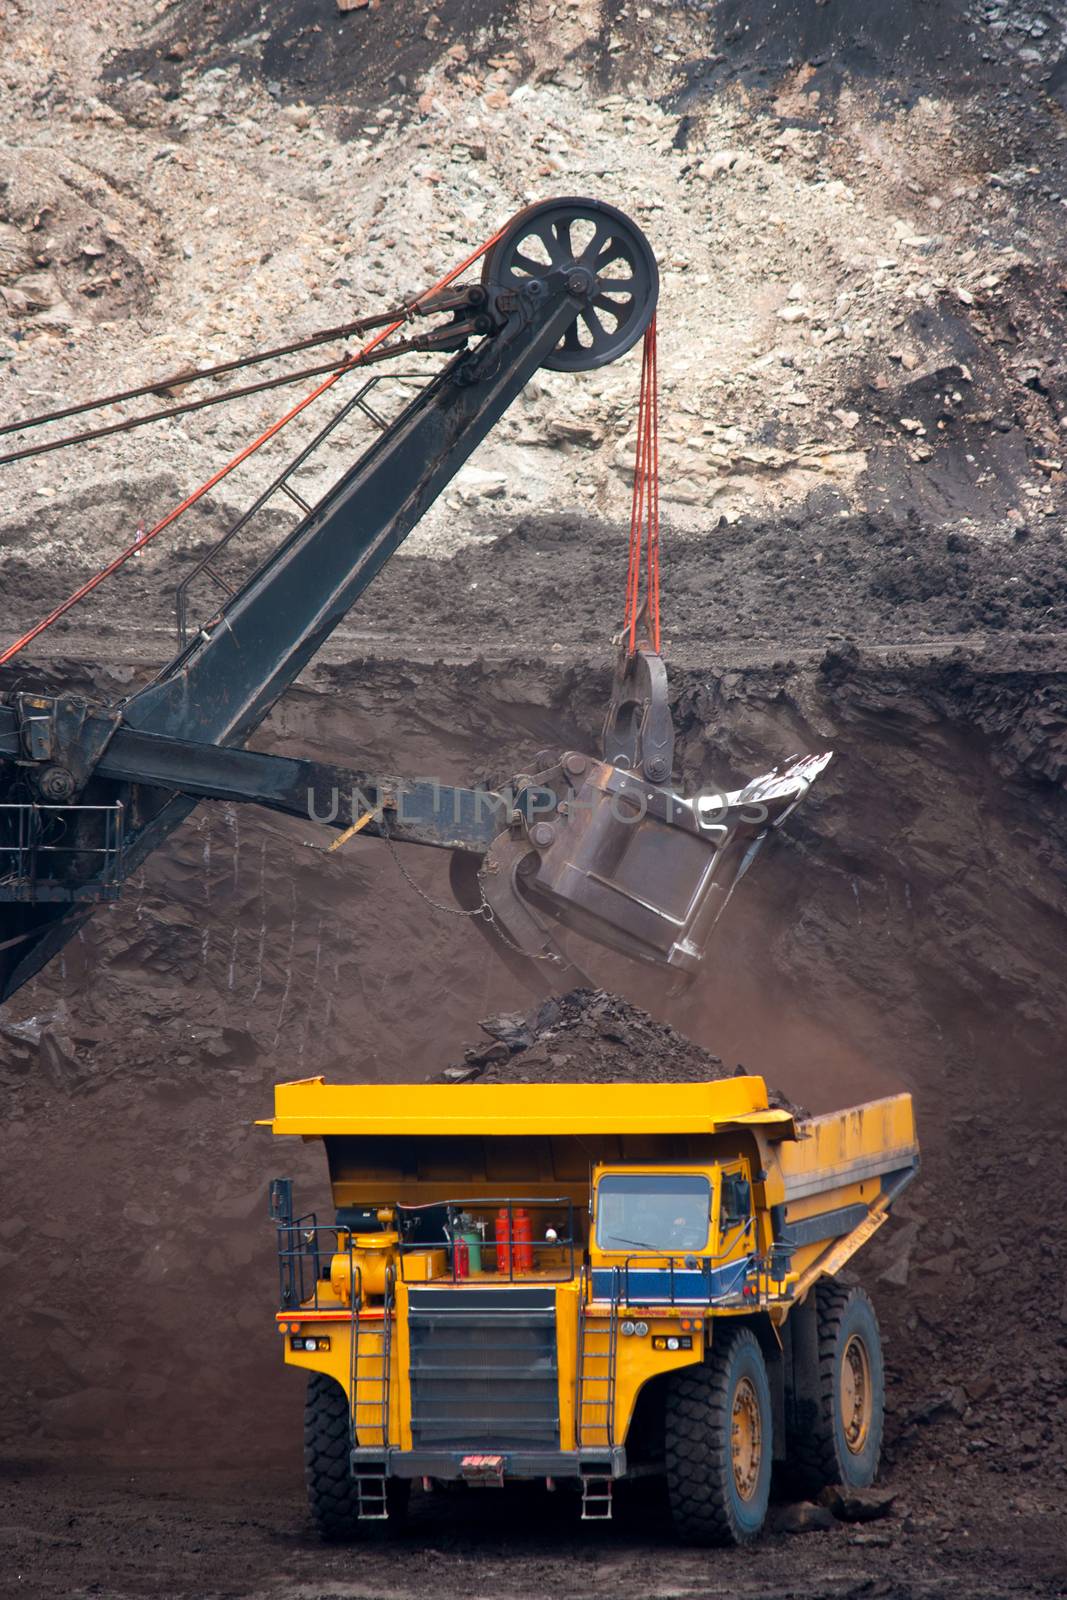 big mining truck unload coal